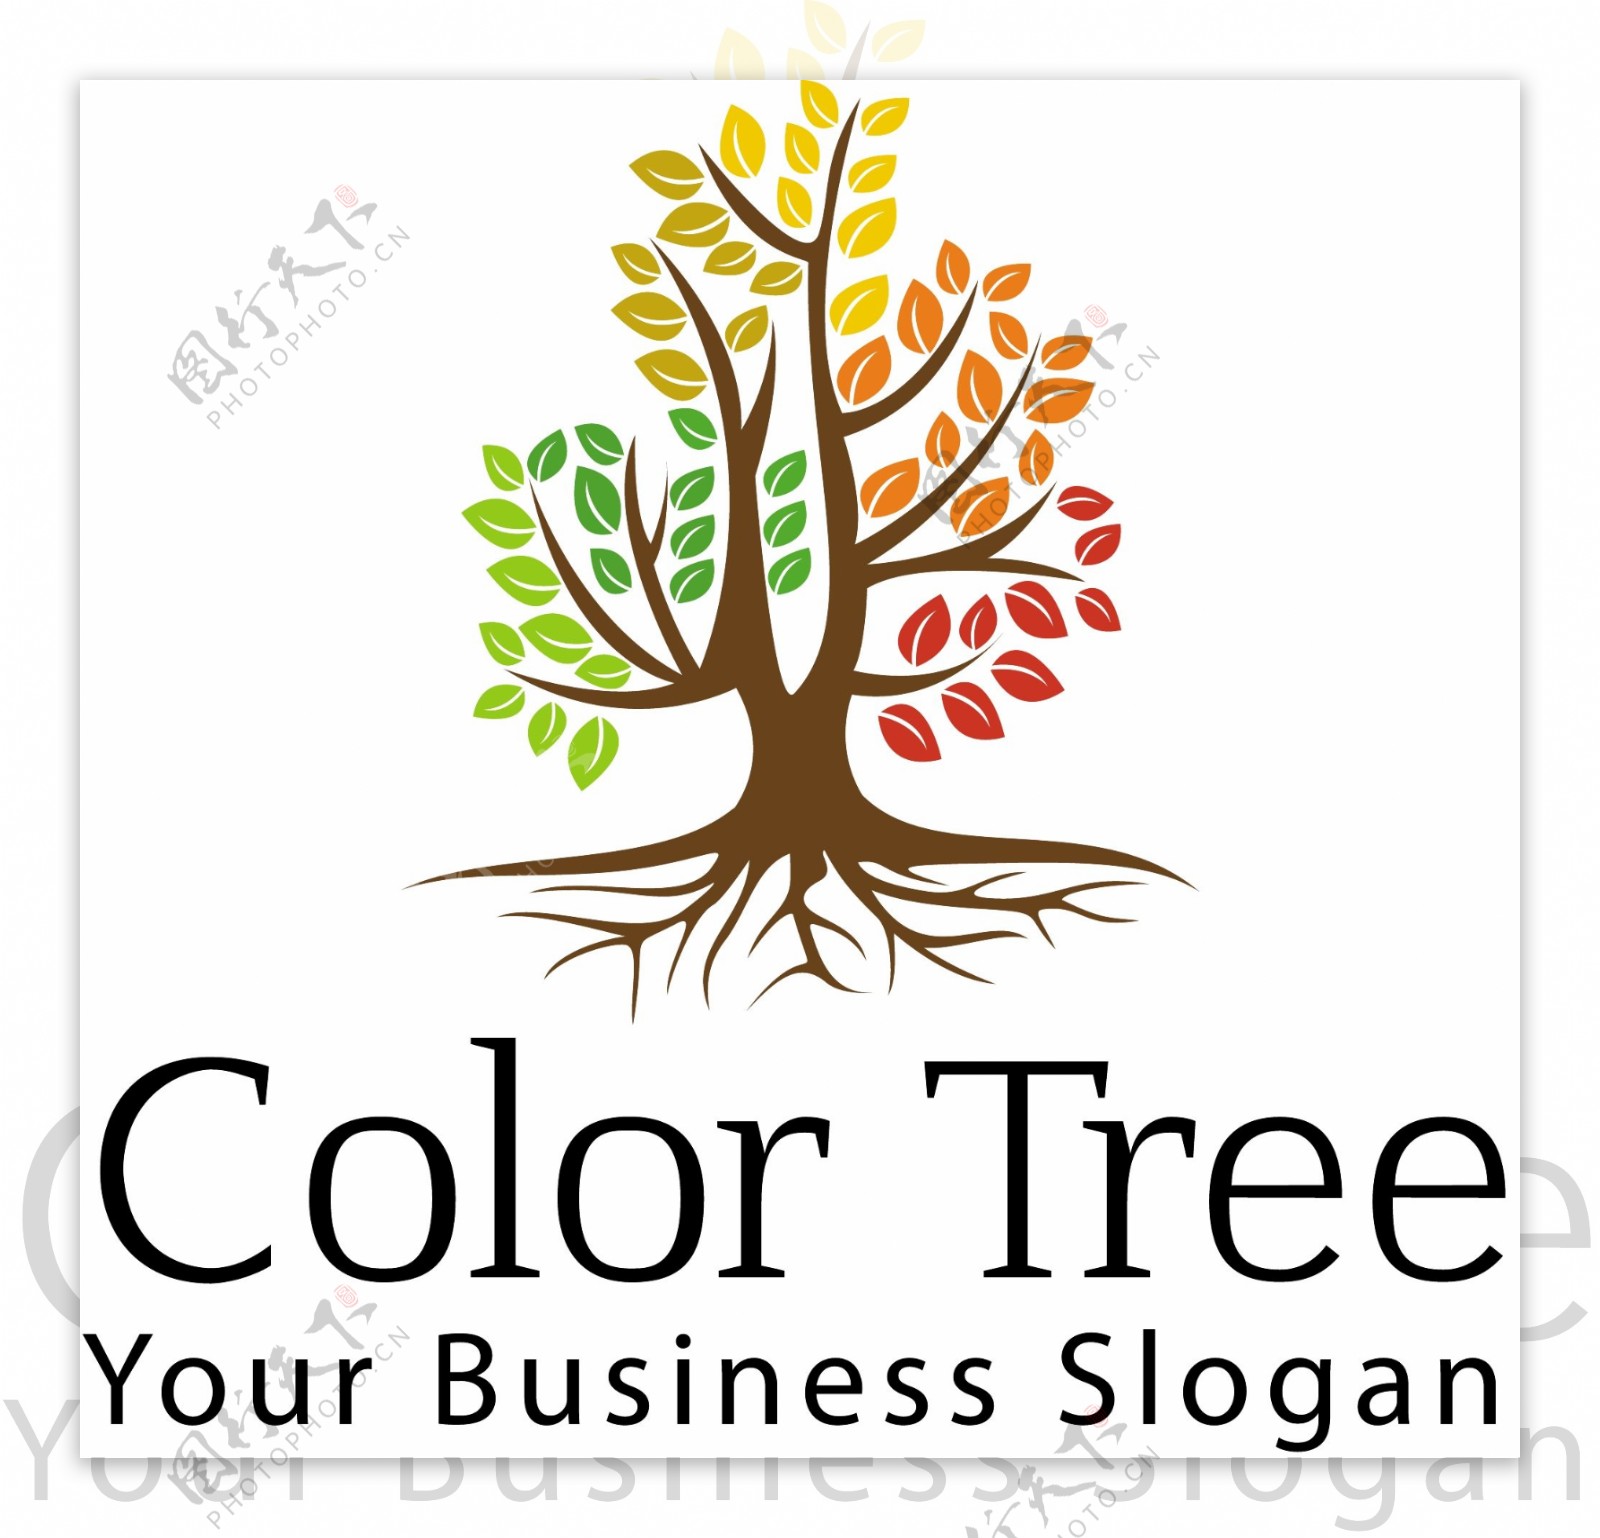 彩色树的标志